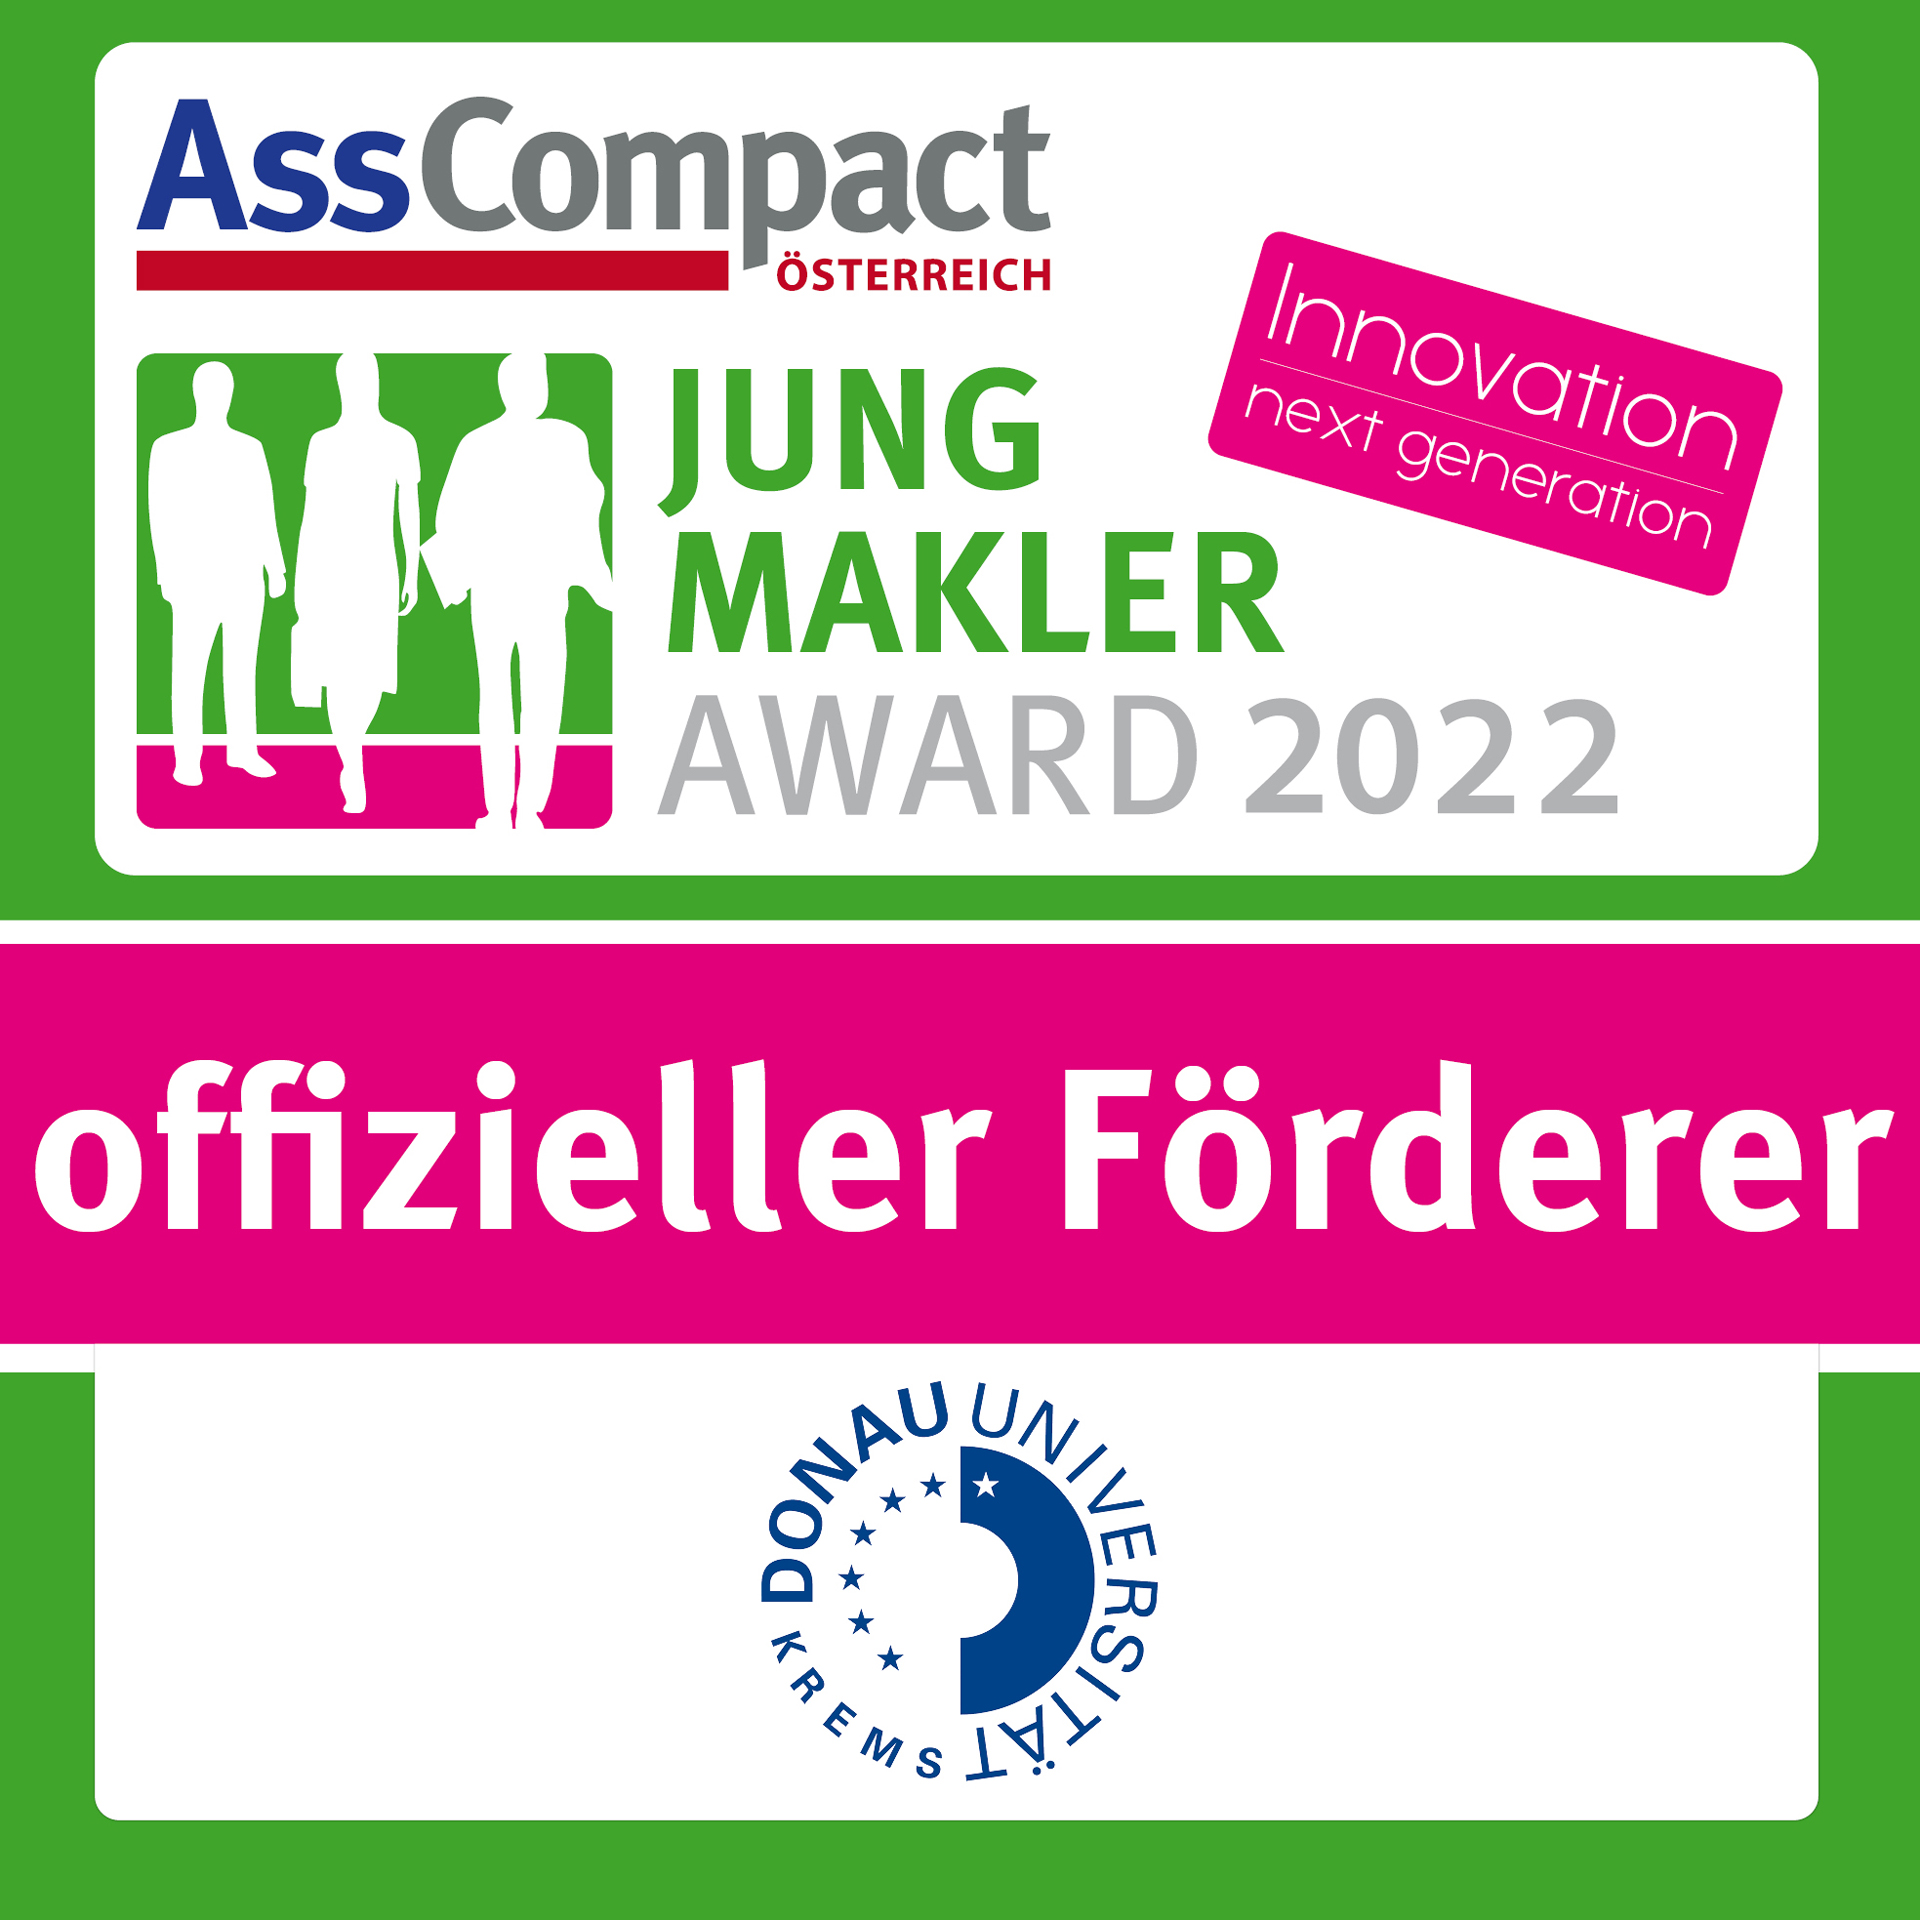 AssCompact Jungmakler Award